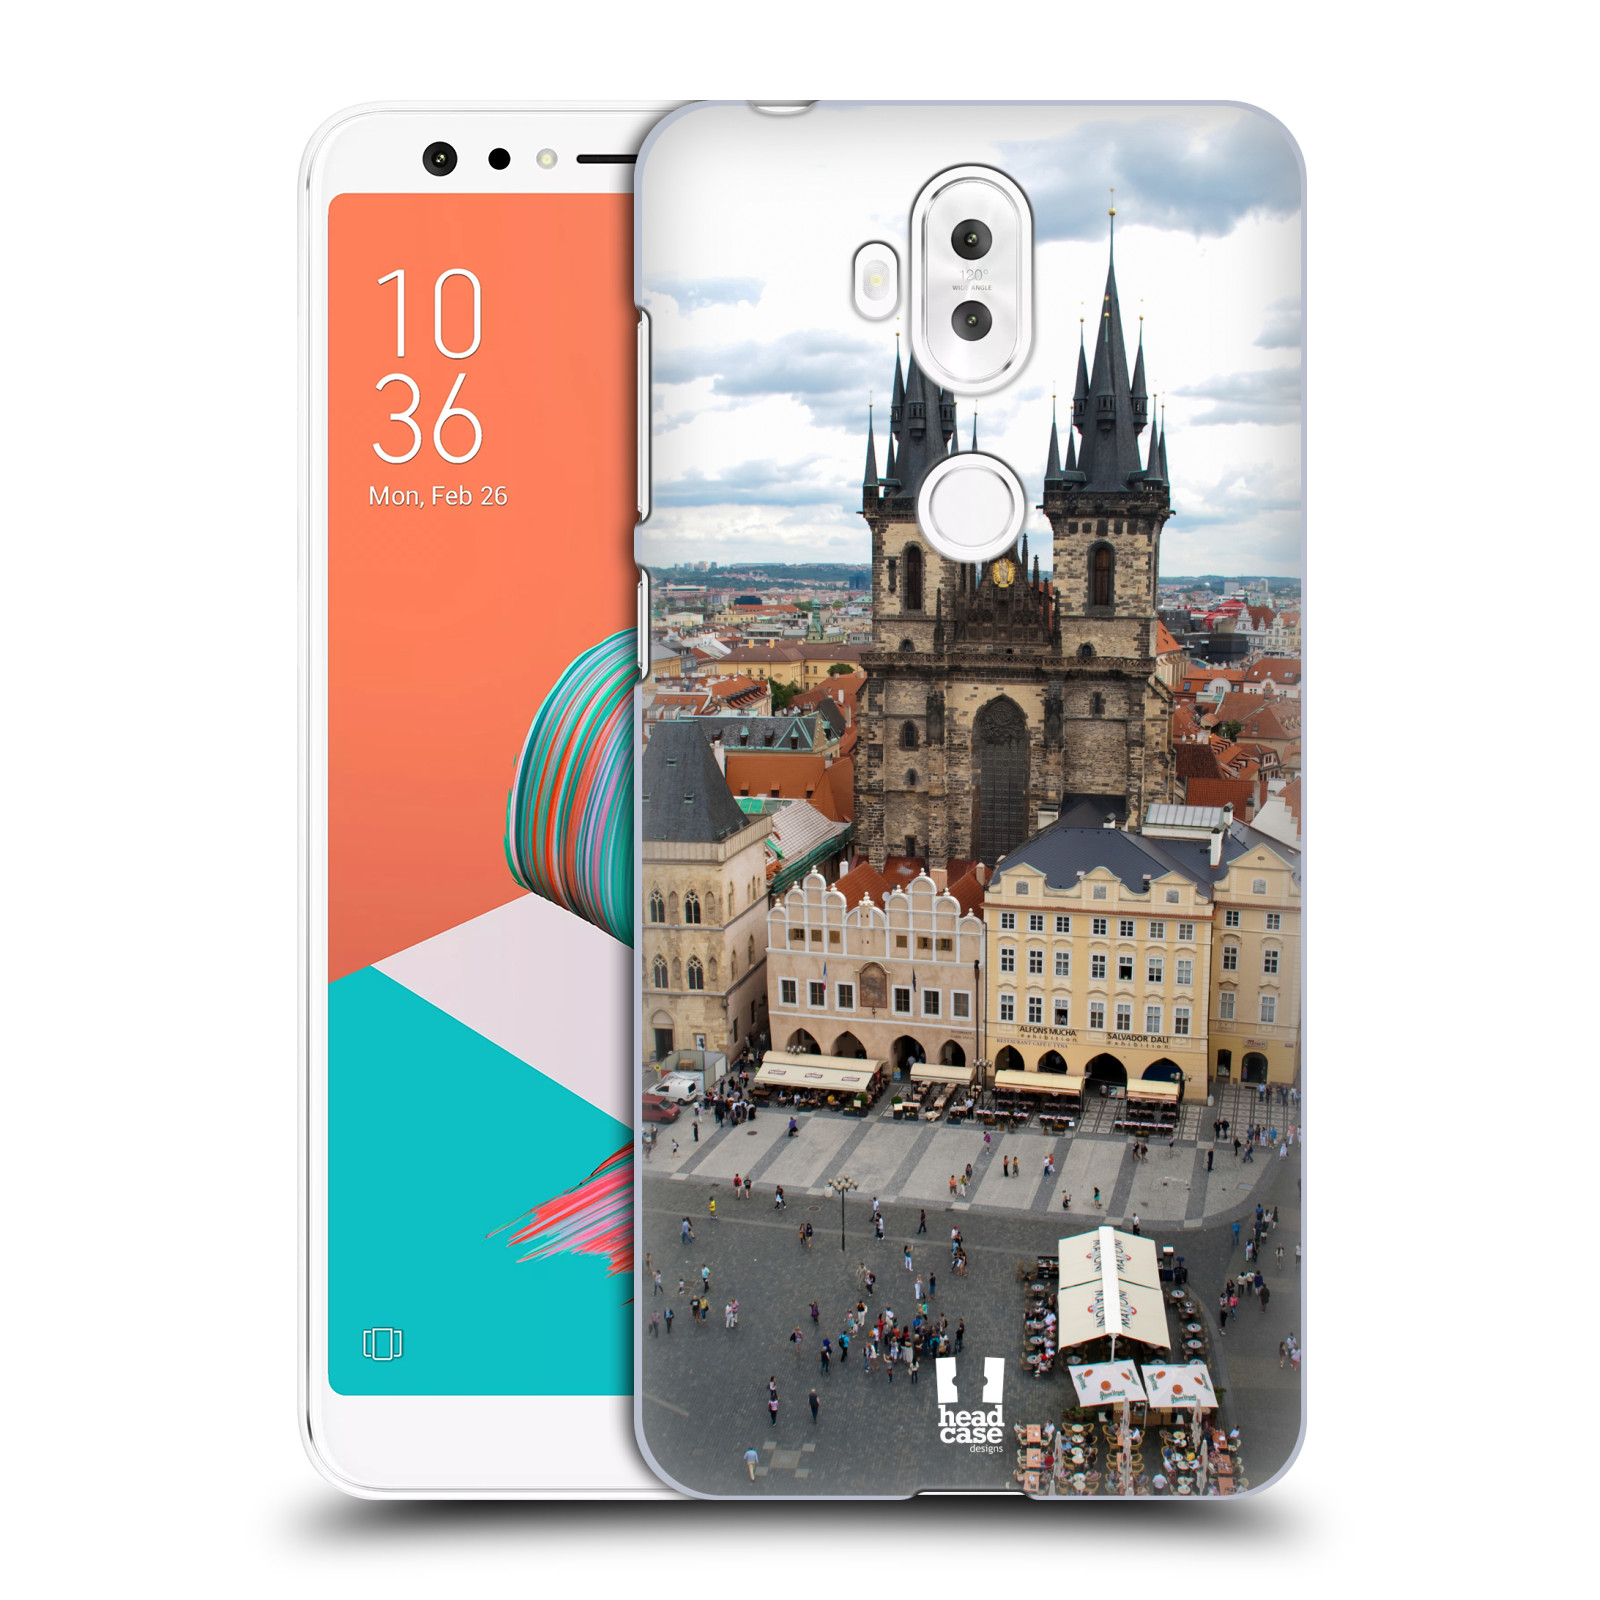 HEAD CASE plastový obal na mobil Asus Zenfone 5 LITE ZC600KL vzor Města foto náměstí ČESKÁ REPUBLIKA, PRAHA, STAROMĚSTSKÉ NÁMĚSTÍ